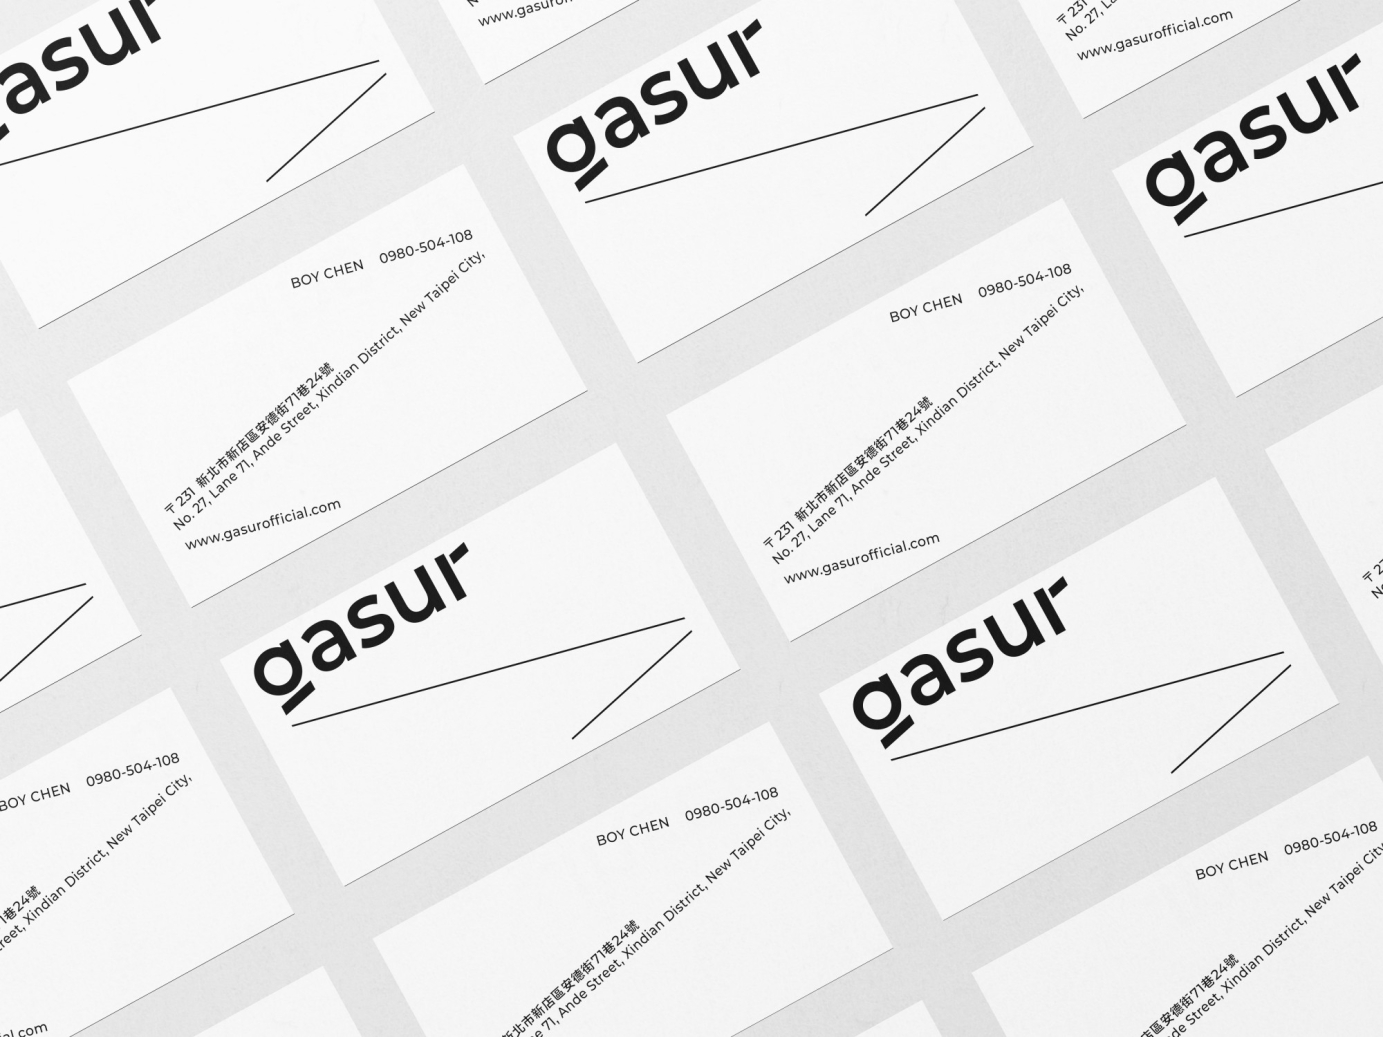 Gasur Fitness - branding